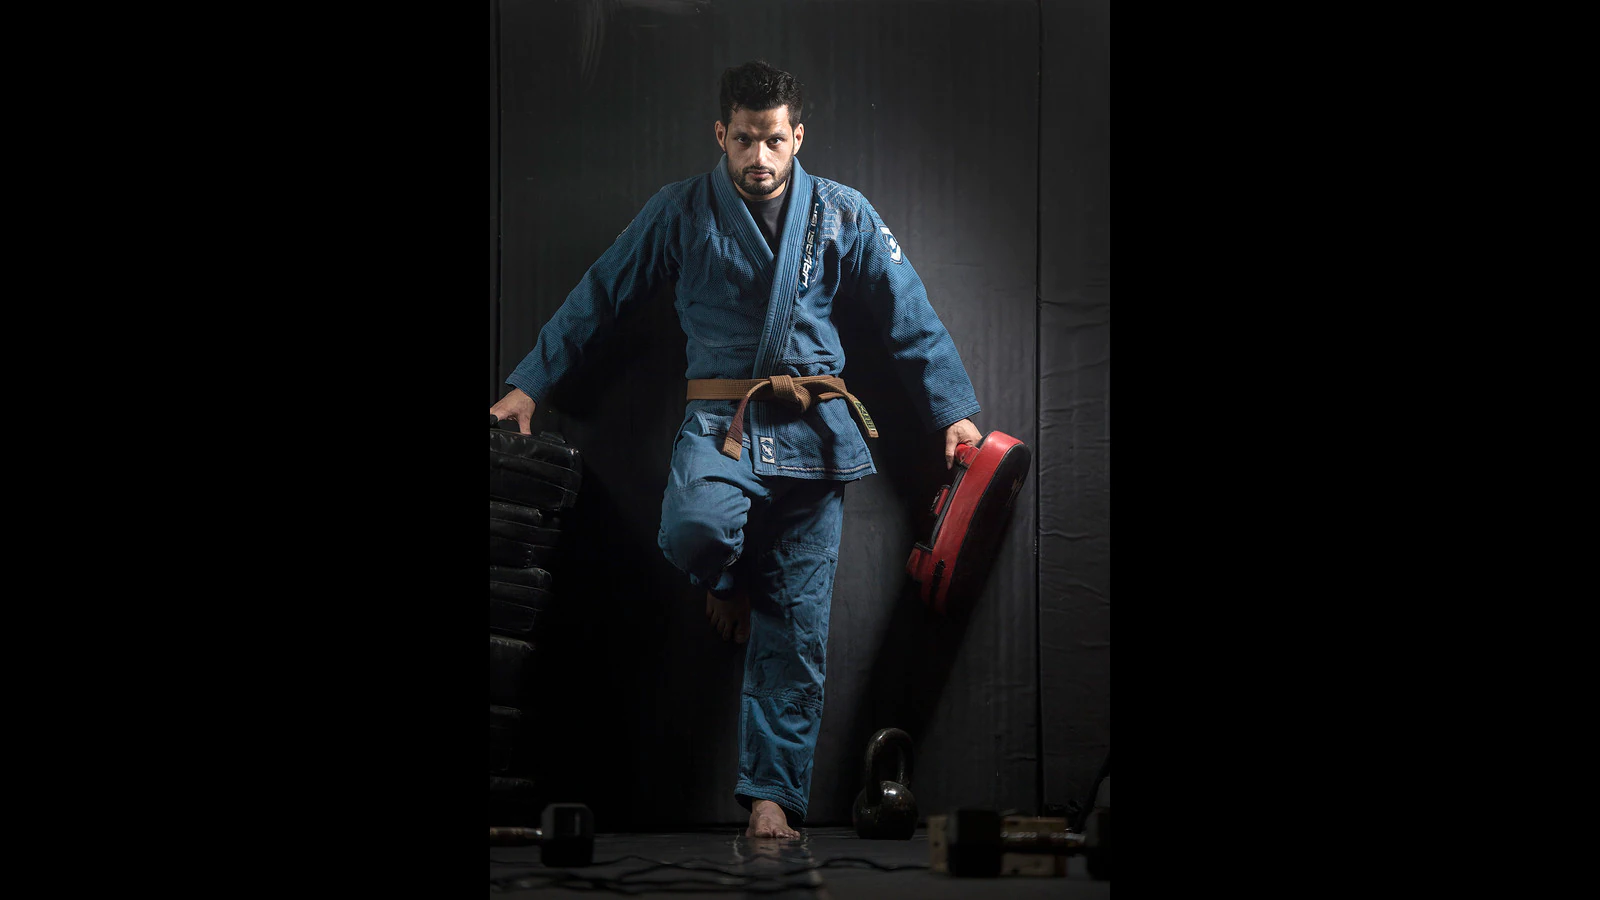 Man of the mat: Meet Siddharth Singh, India’s Brazilian-jiu-jitsu champ